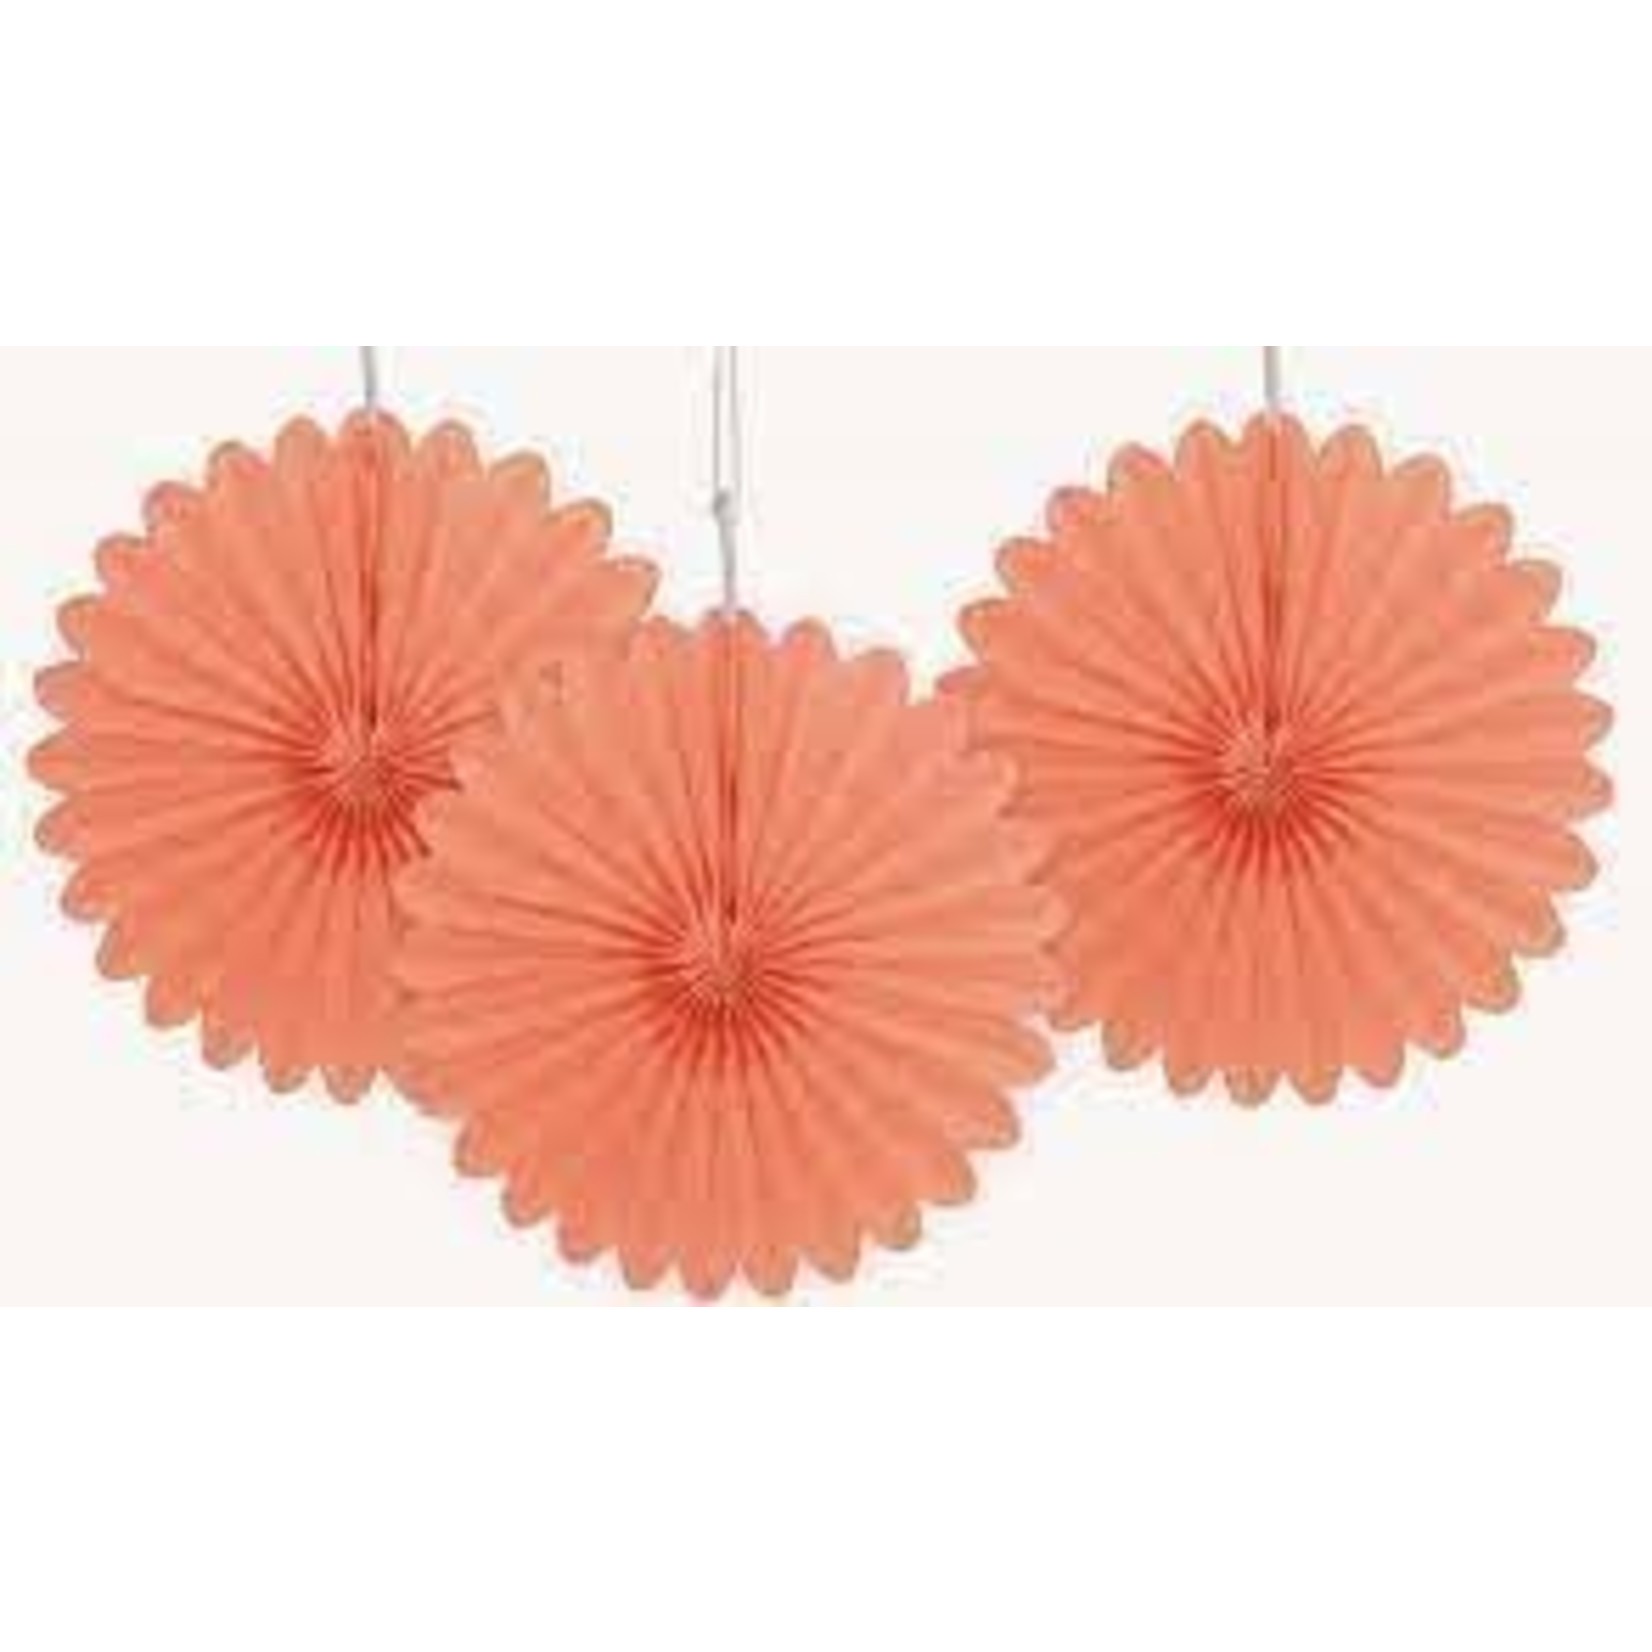 Coral Mini Decorative Fans 3ct